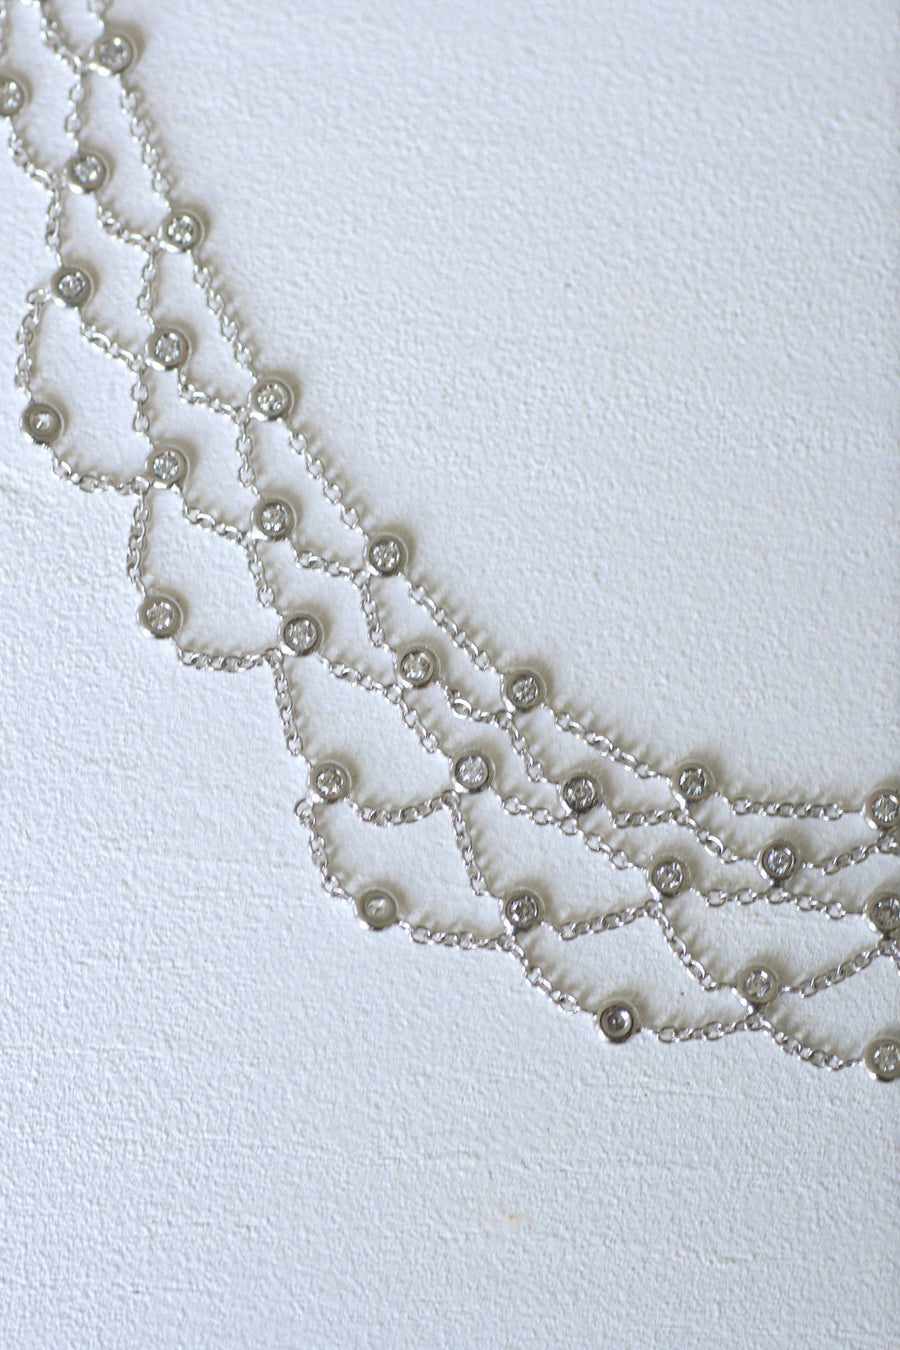 White gold and diamond drapery necklace - Galerie Pénélope